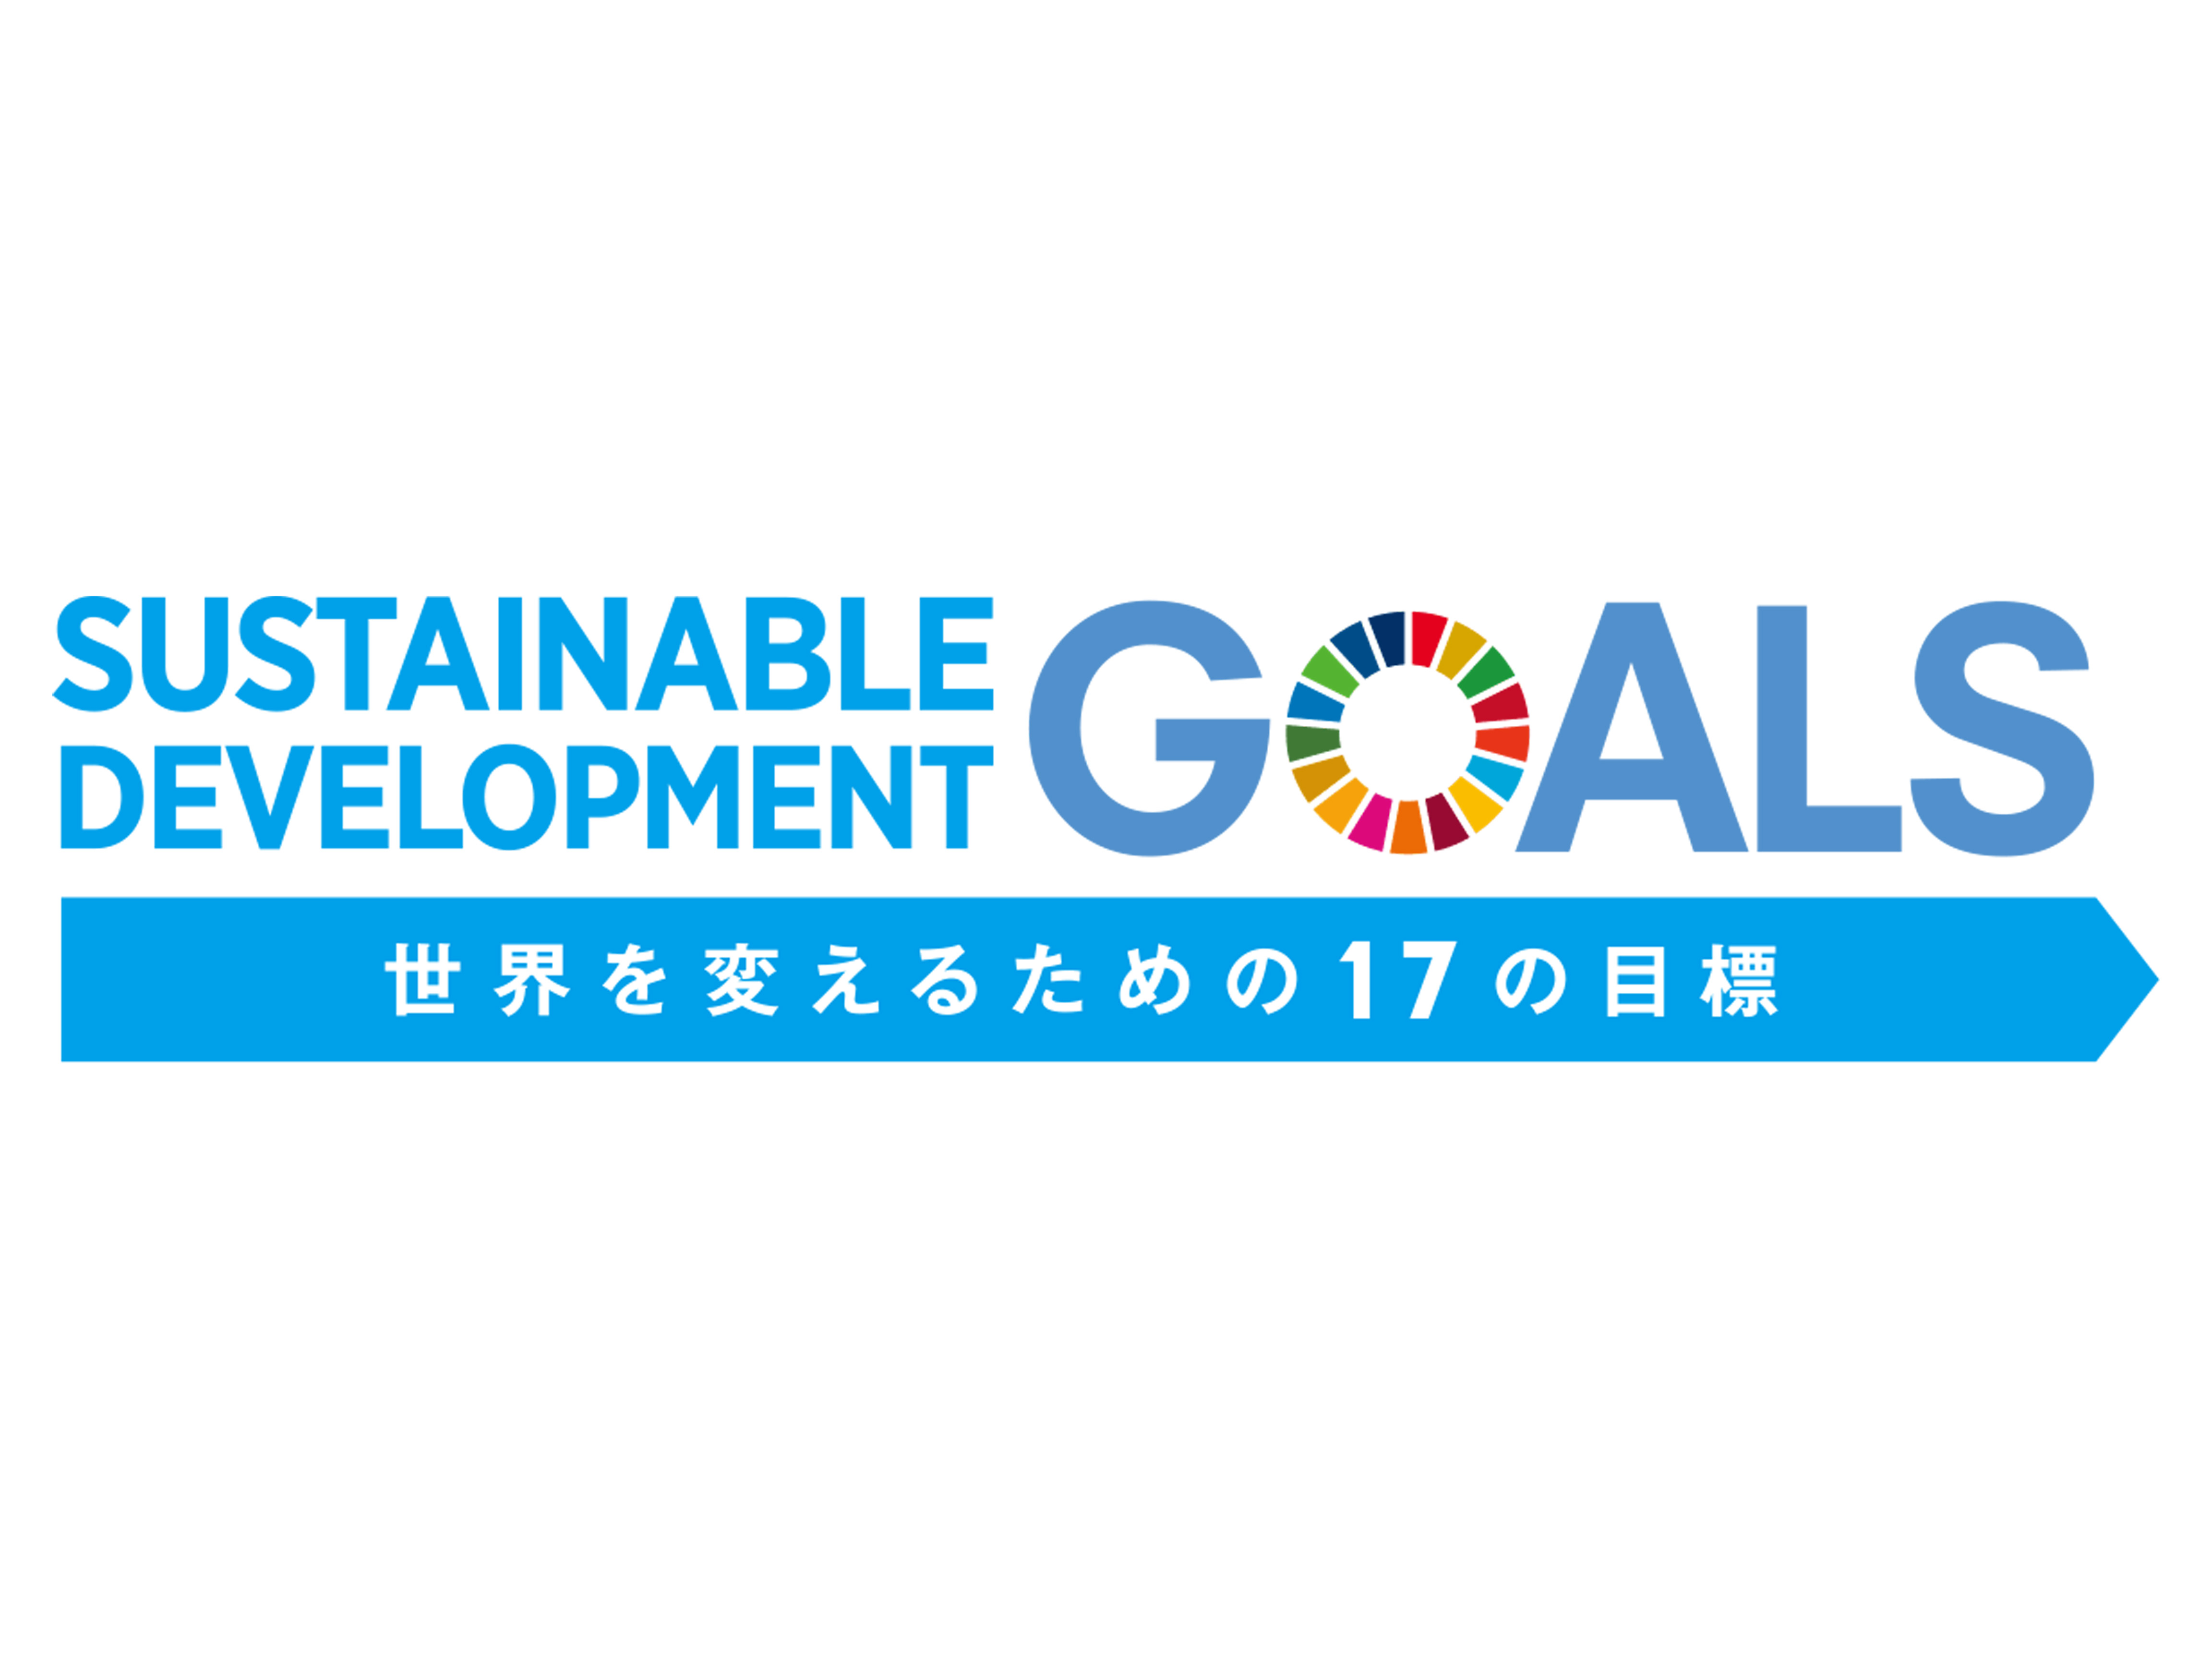 3月17日金曜日は『SDG’S』の日です。キャンペーン実施いたします。